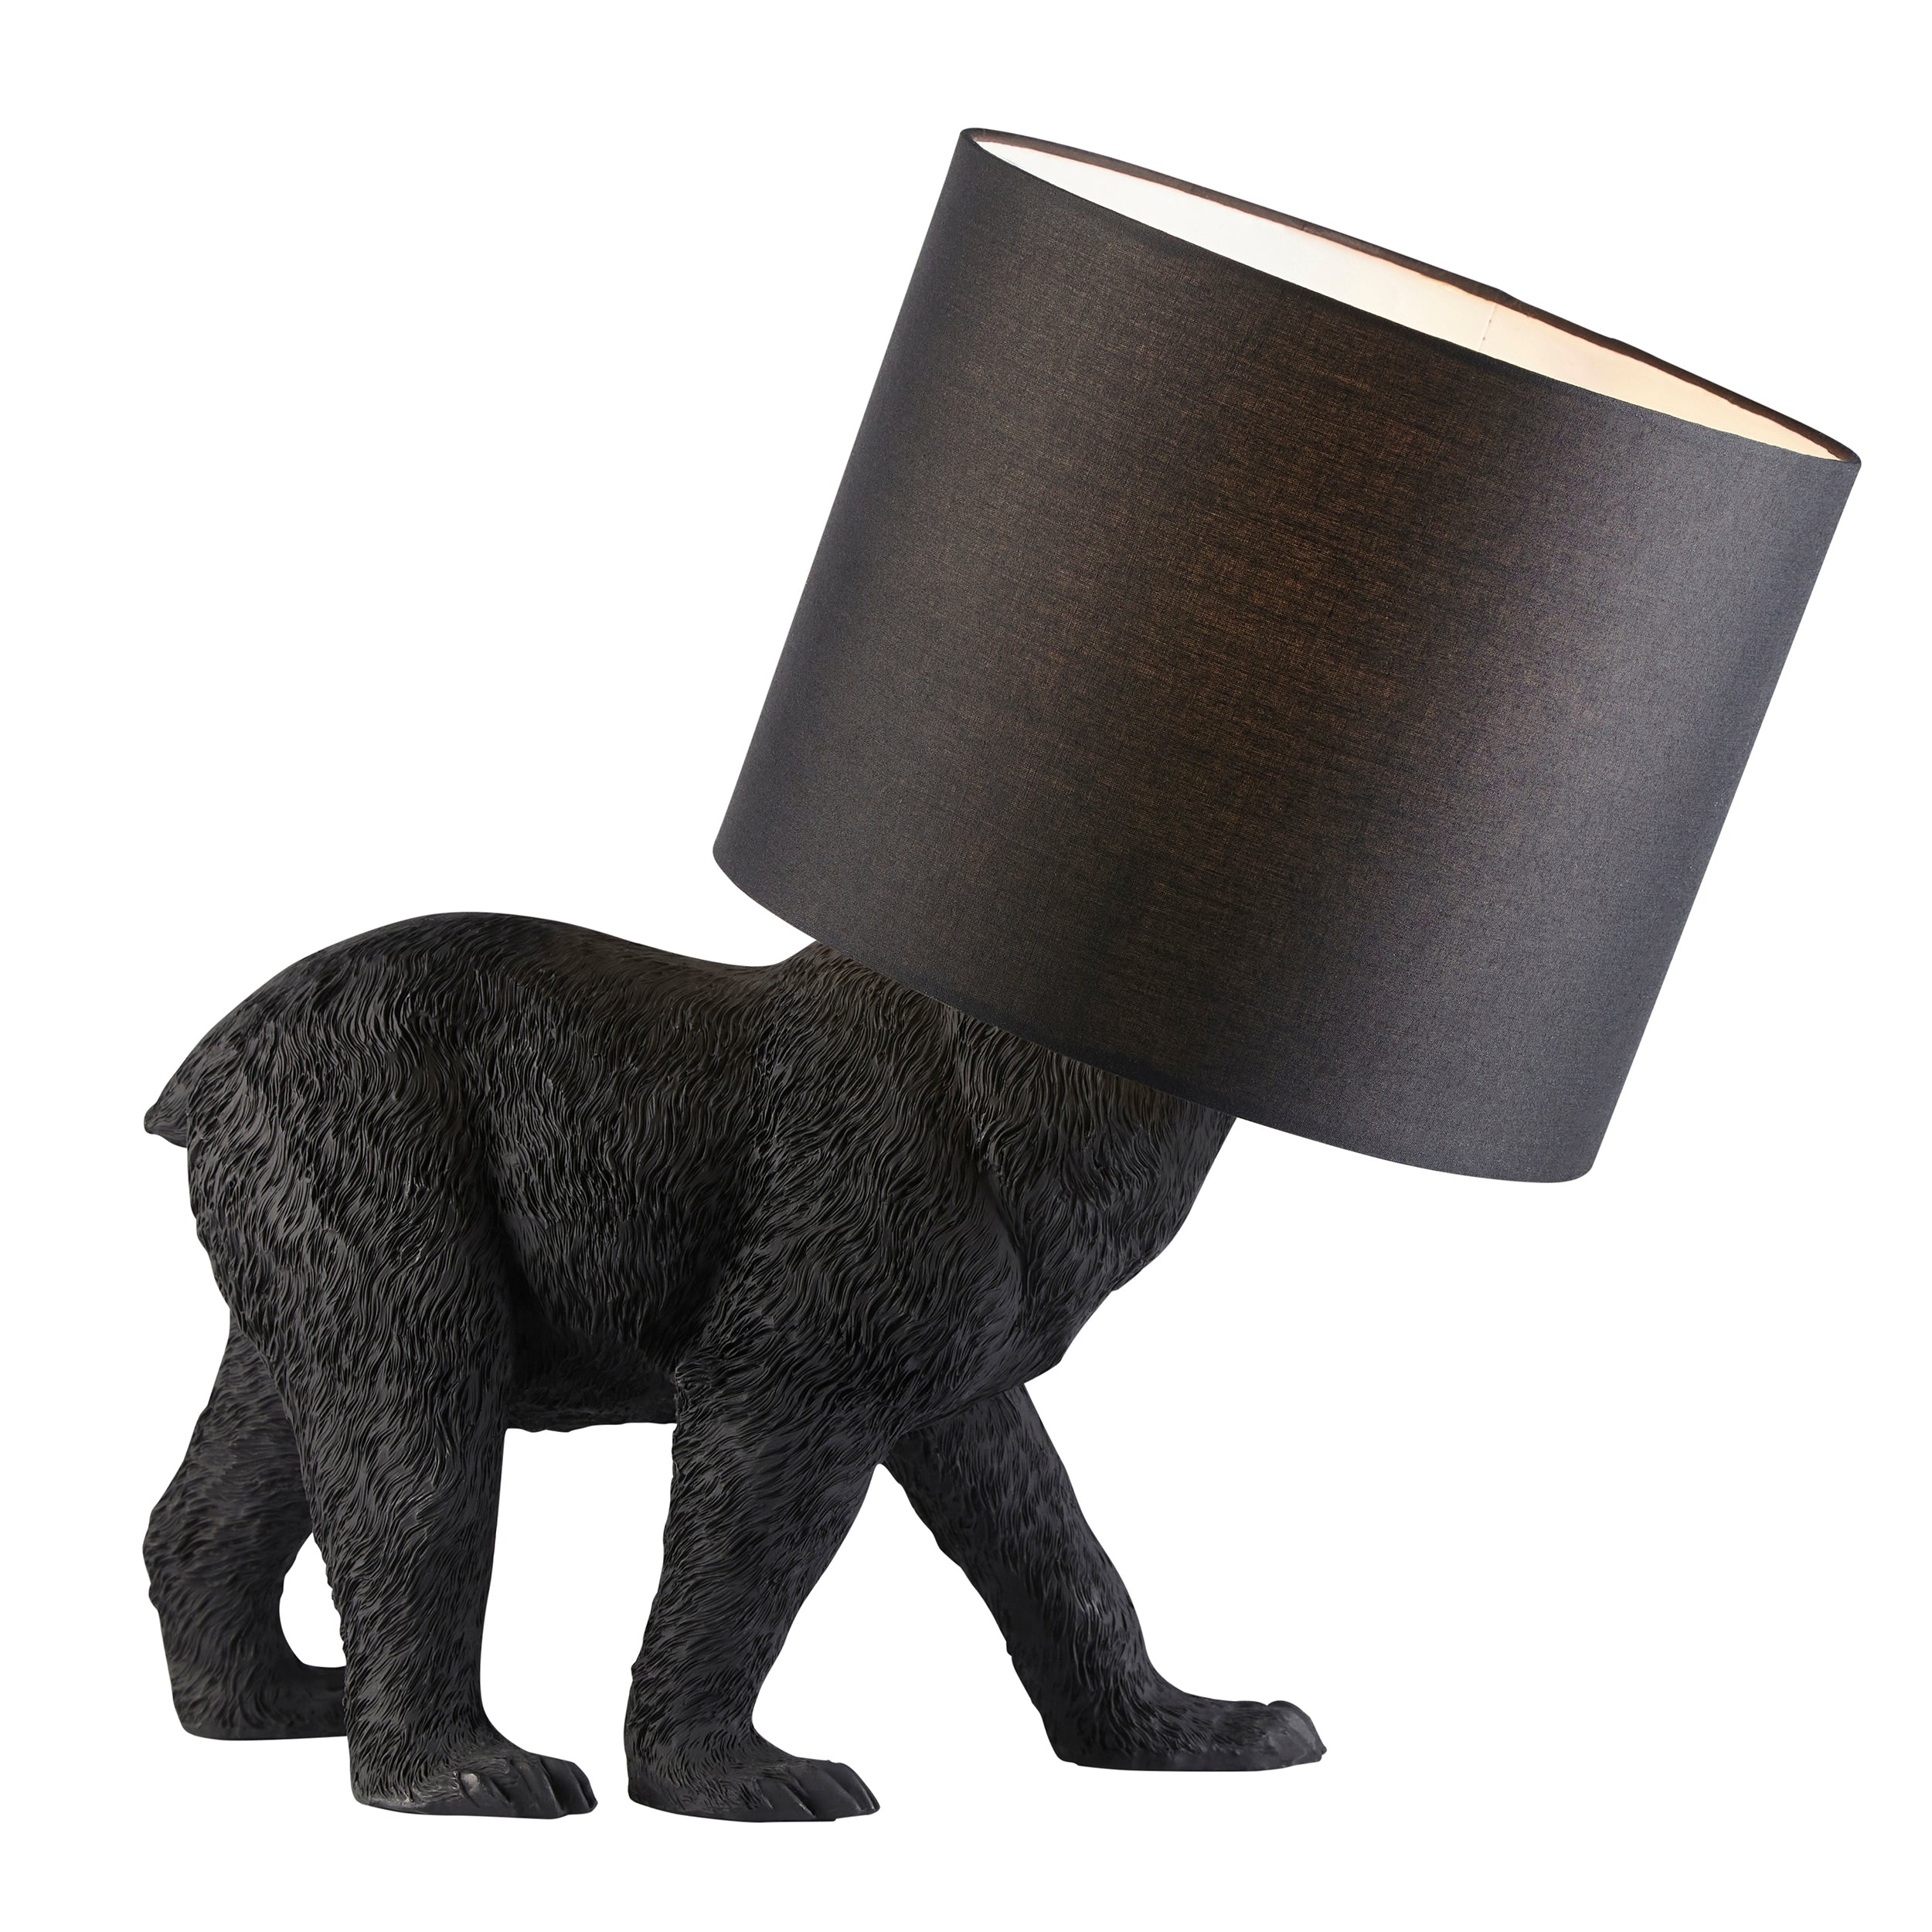 Barack Bear Detailed Design Table Lamp in Black Resin